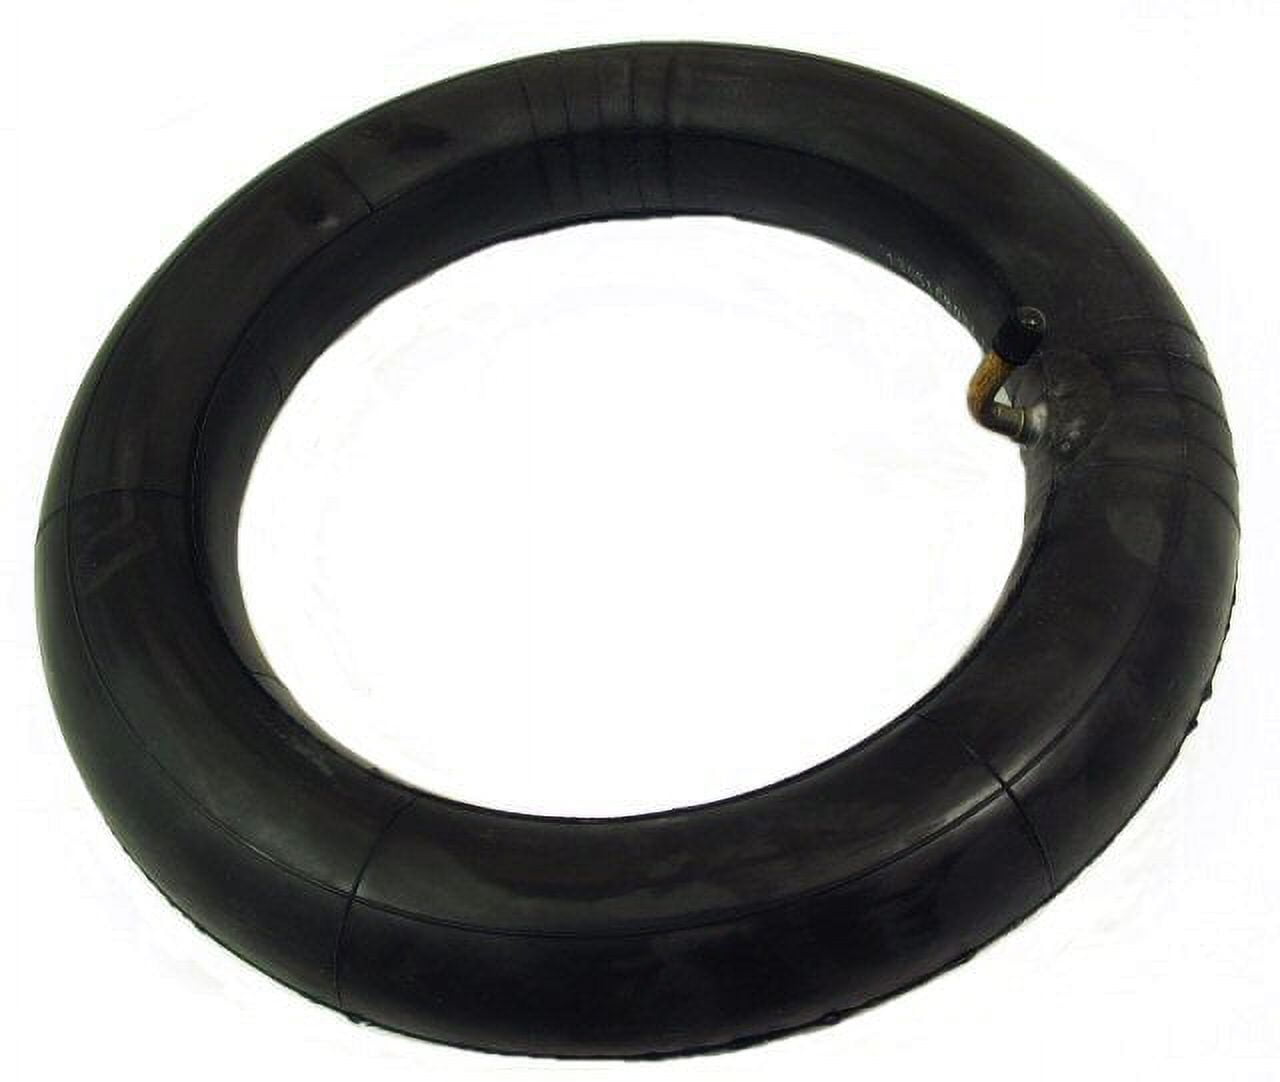 1PZ 12 inch x 2.25 inch / 2.50 inch Inner Tube Tyre Innertube